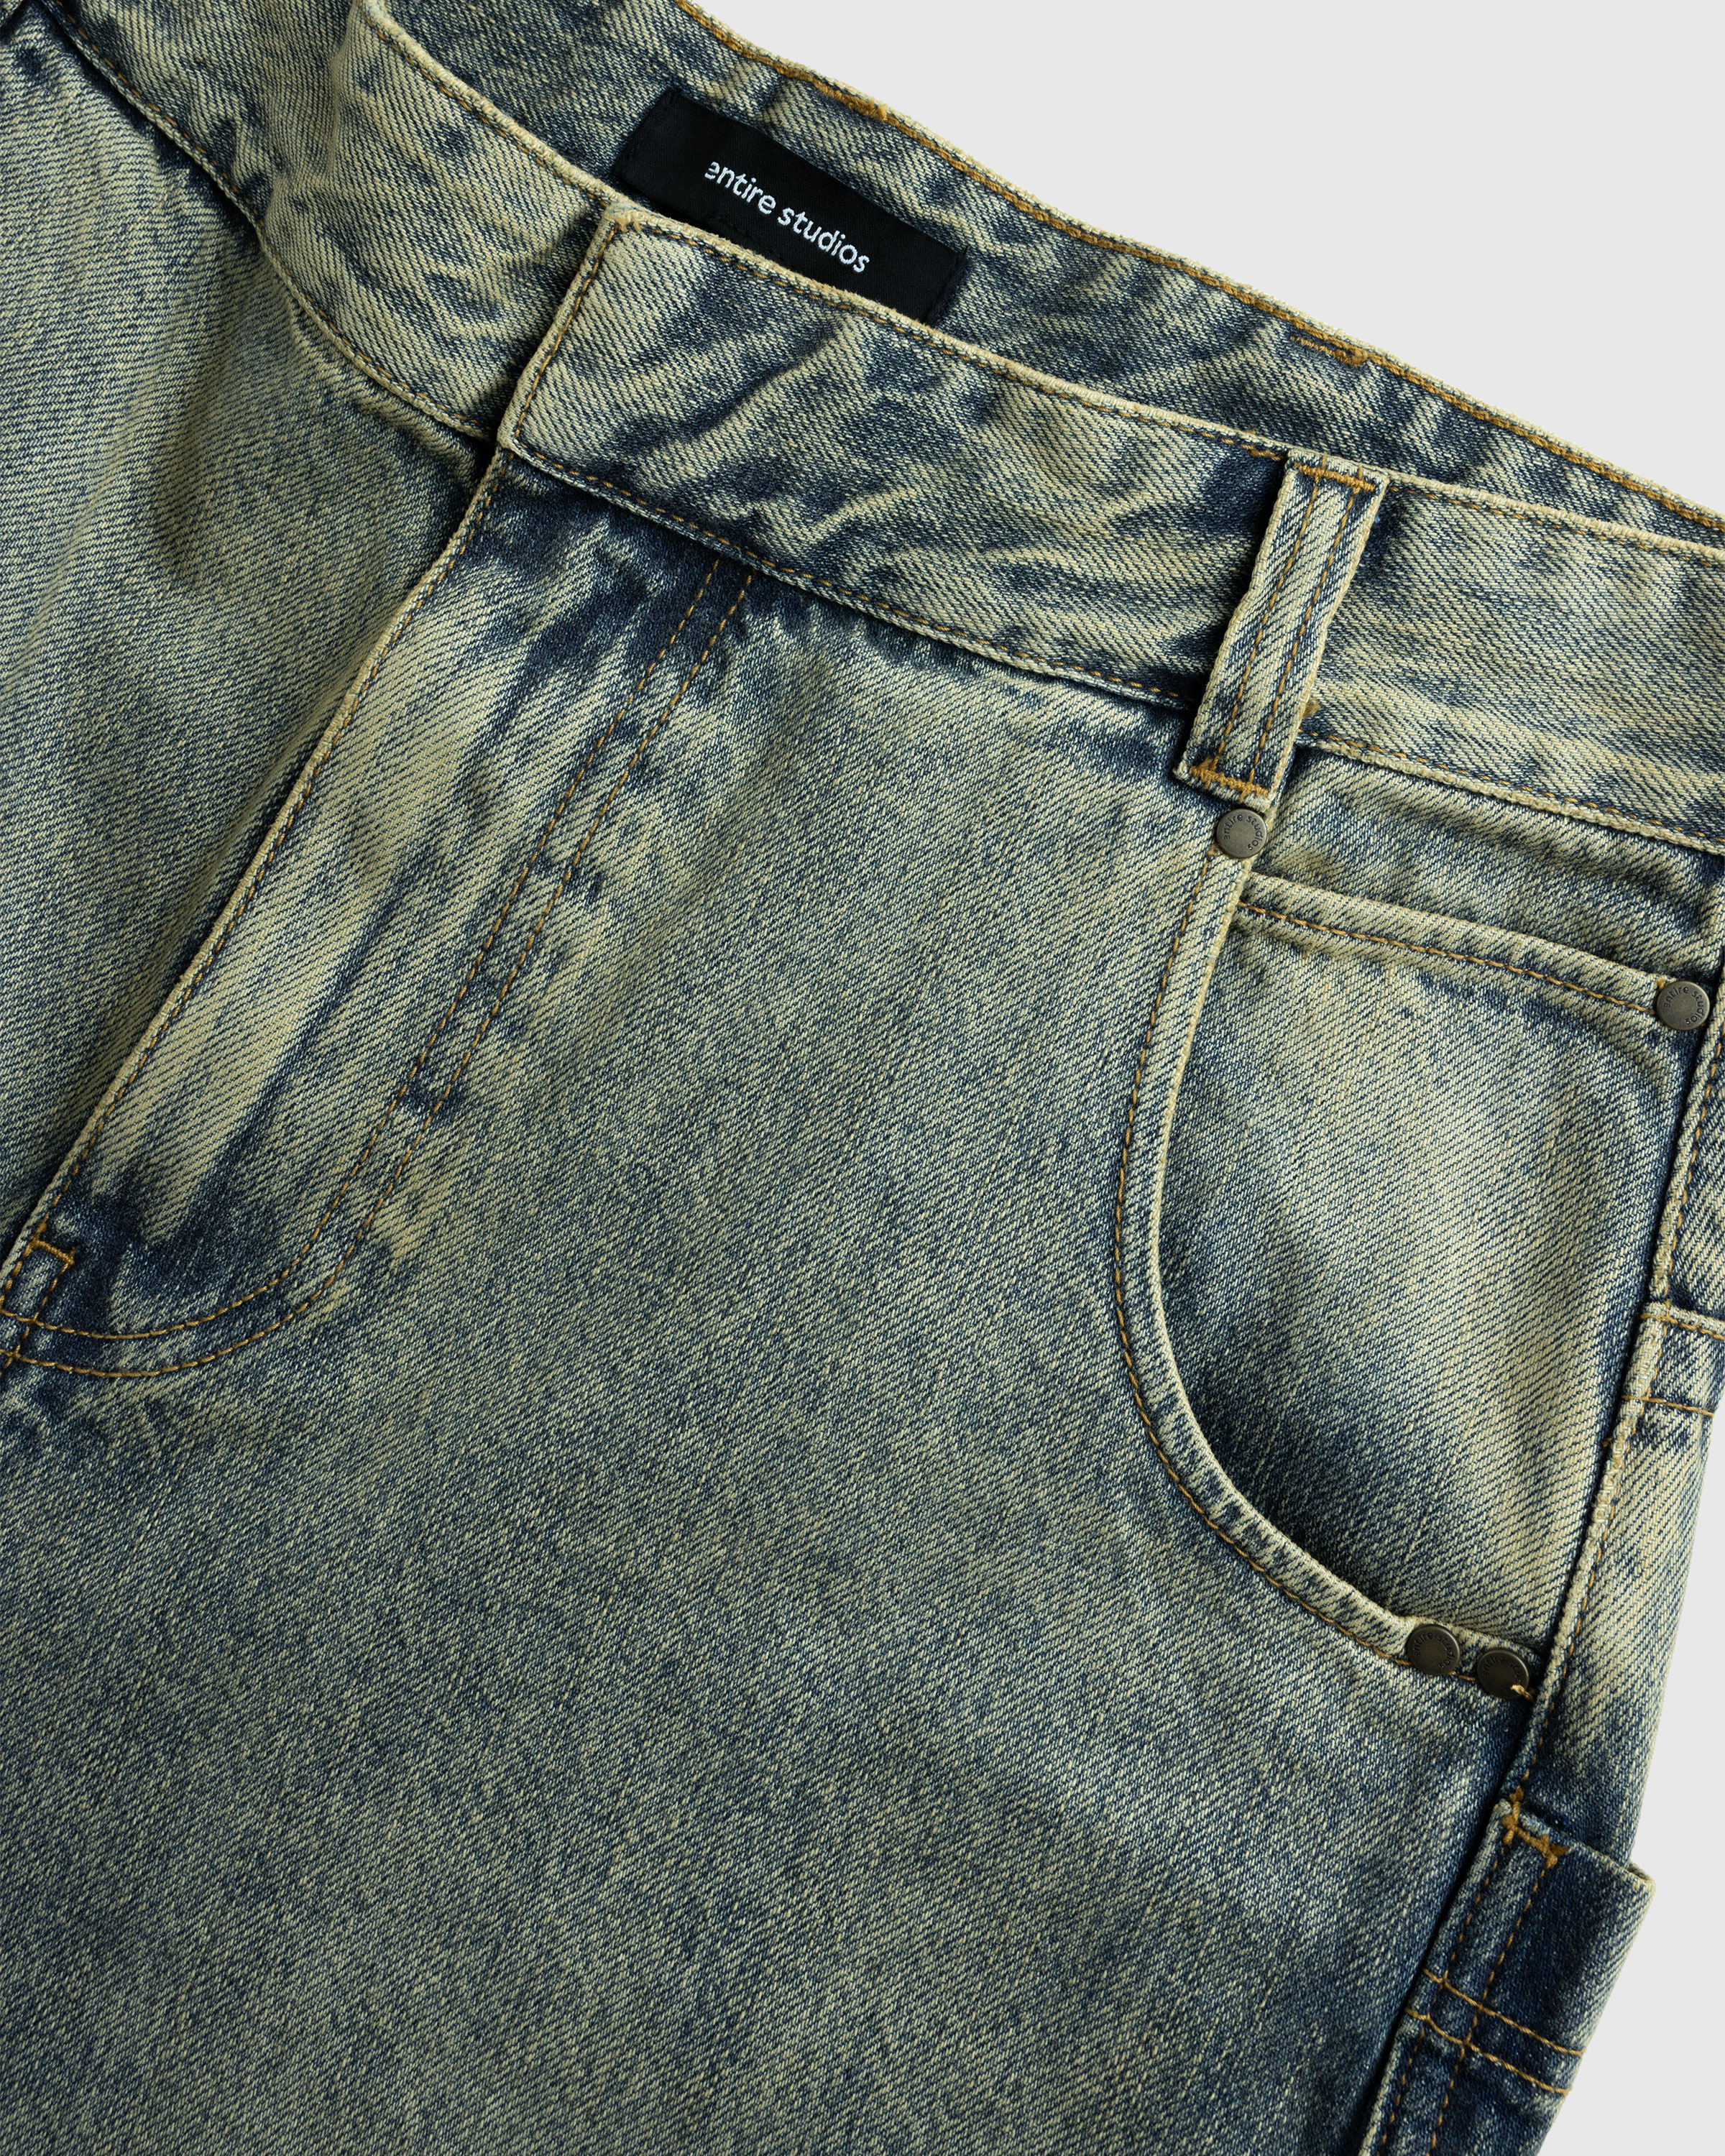 Entire Studios – D–Shorts Surface Wave - Denim Shorts - Blue - Image 6